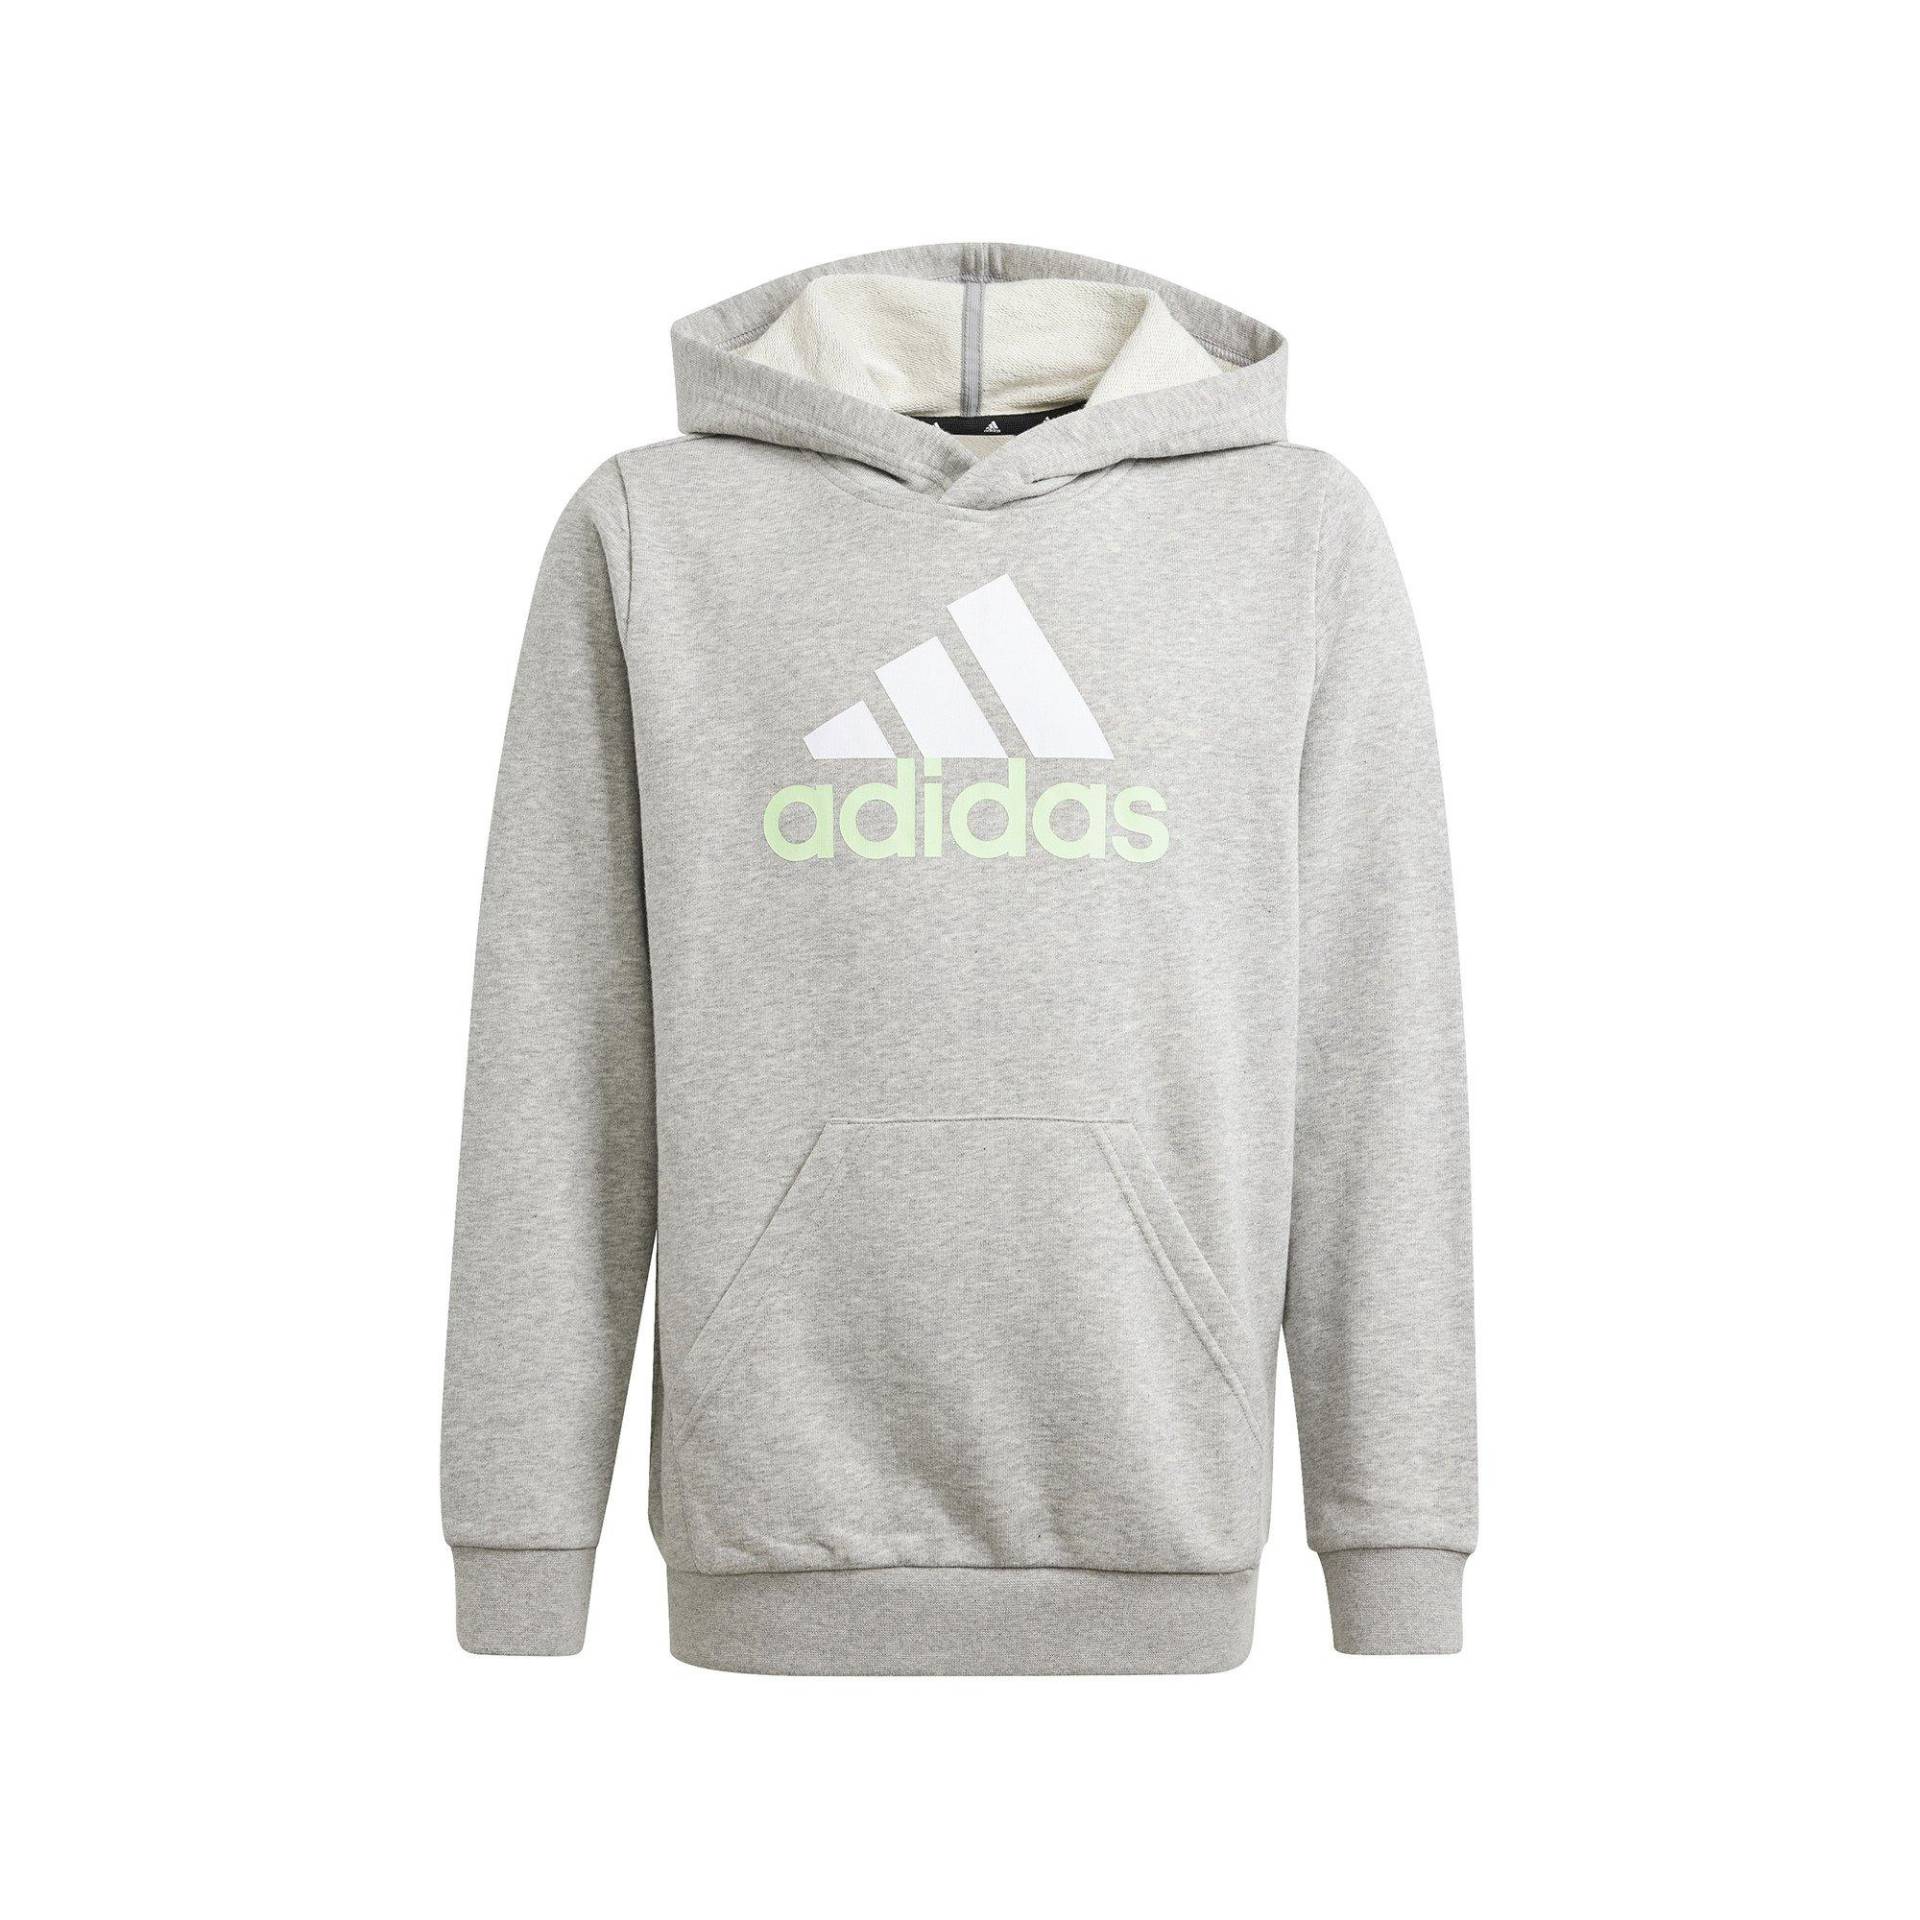 adidas Sweatshirt Jungen Grau Melange 152 von Adidas